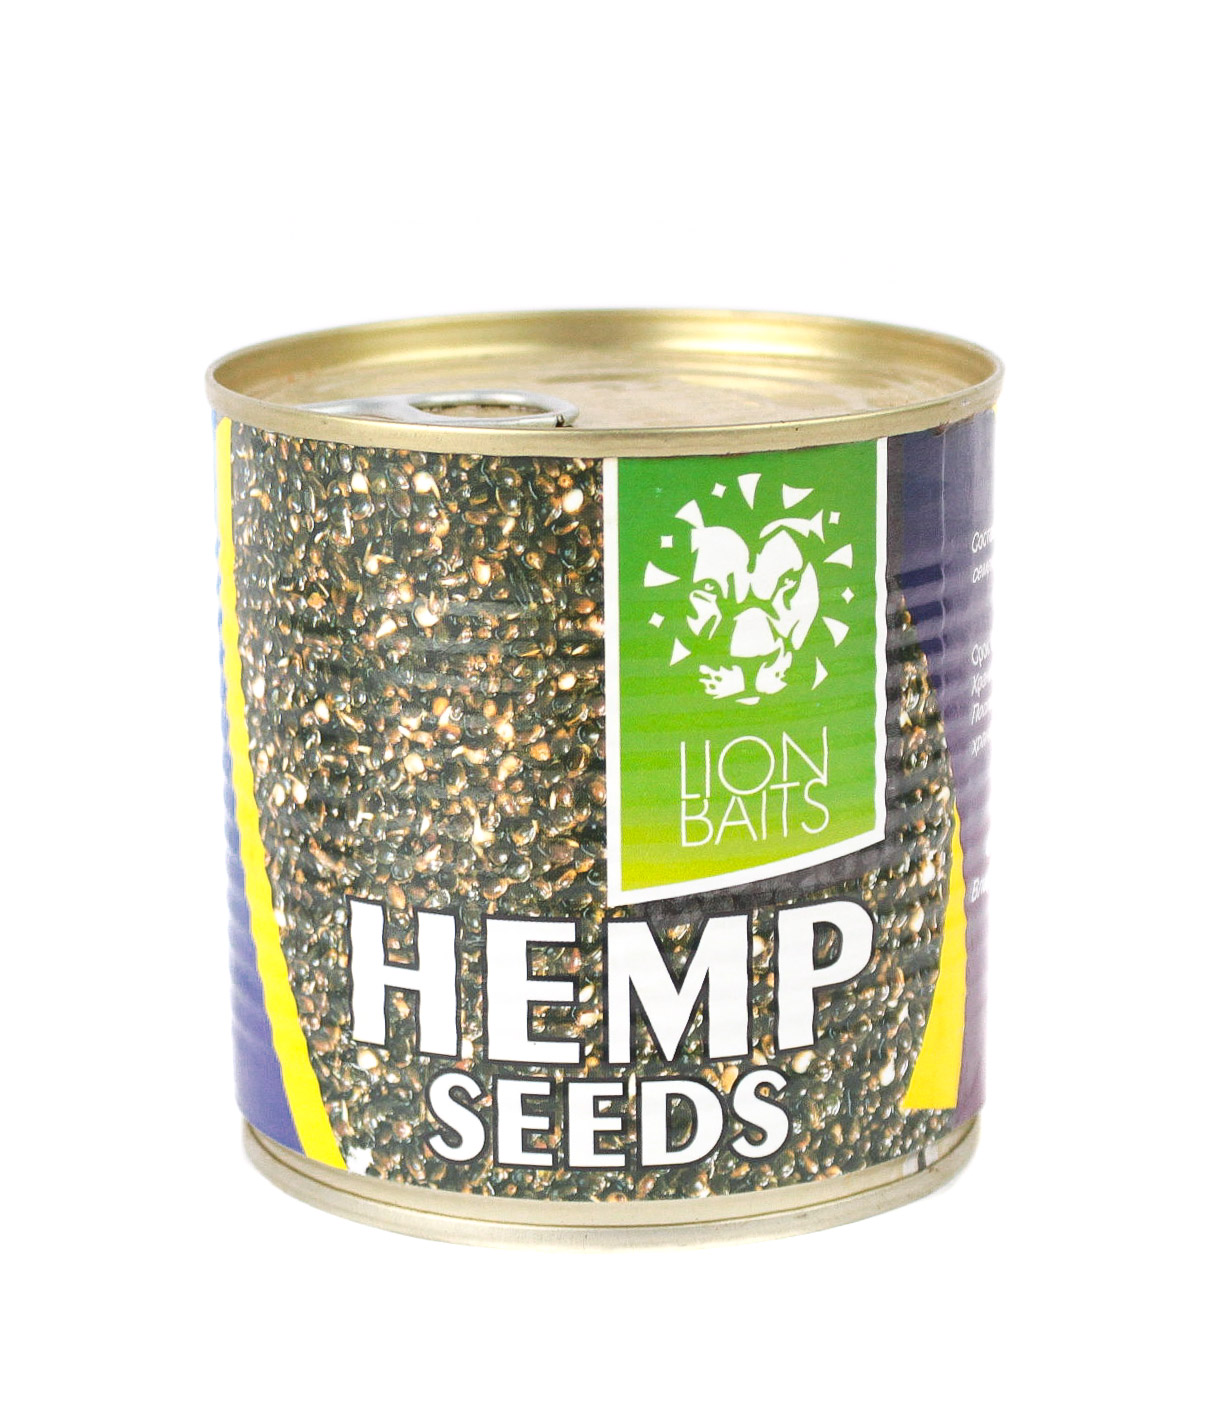 Консервированная зерновая смесь Lion Baits hemp seeds 430мл - фото 1